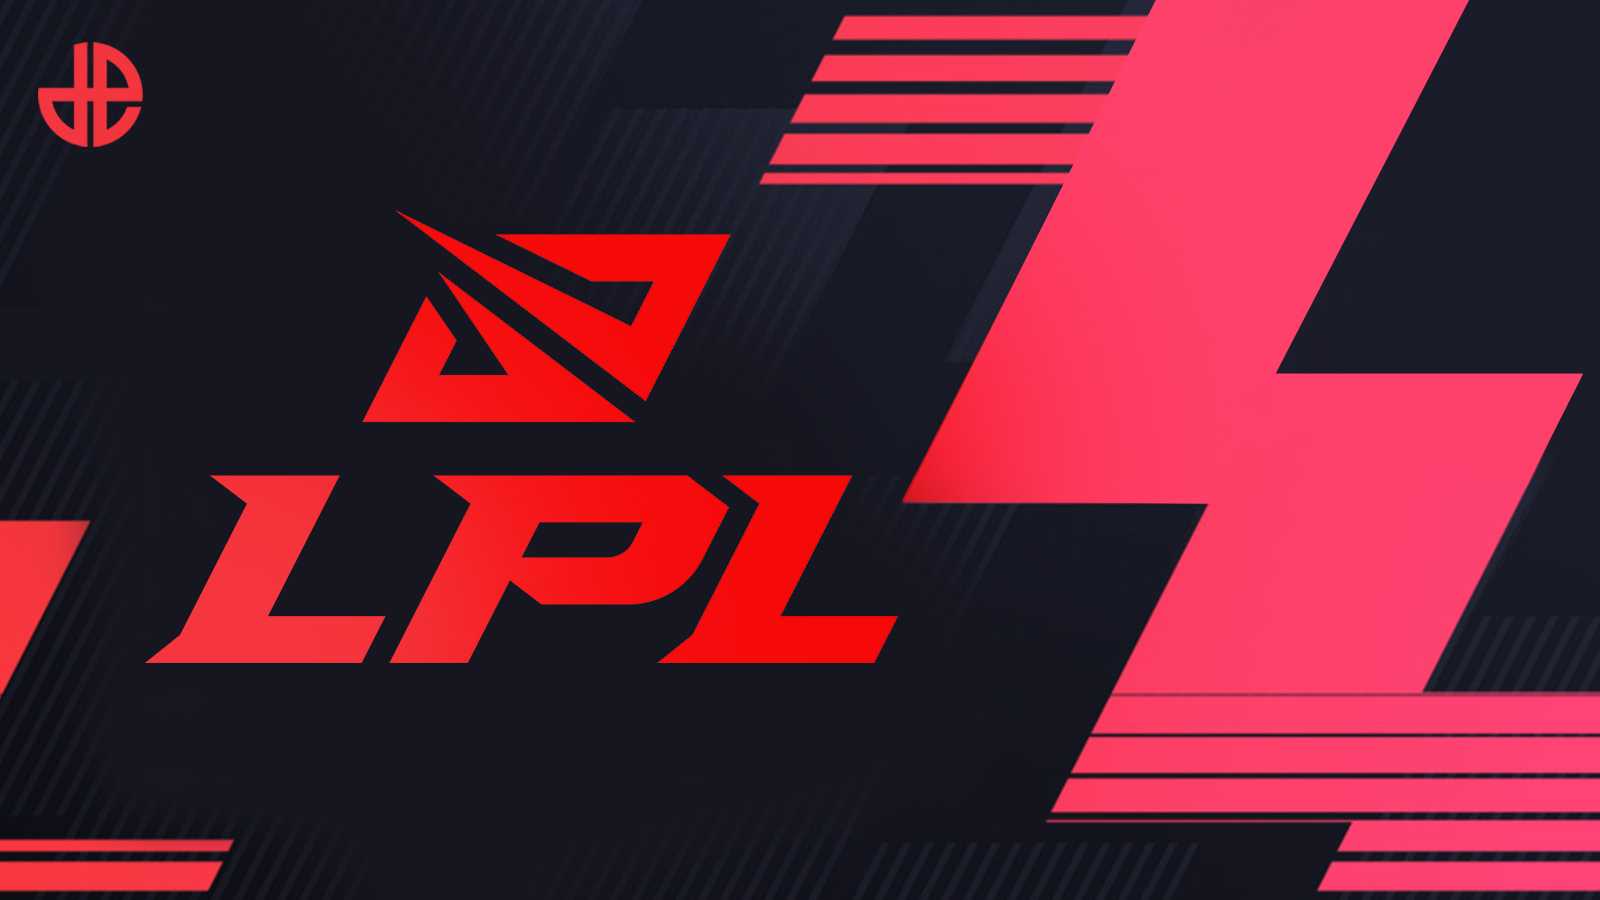 LPL 2021 Spring Split: RNG domina il Team WE conquistando il secondo posto